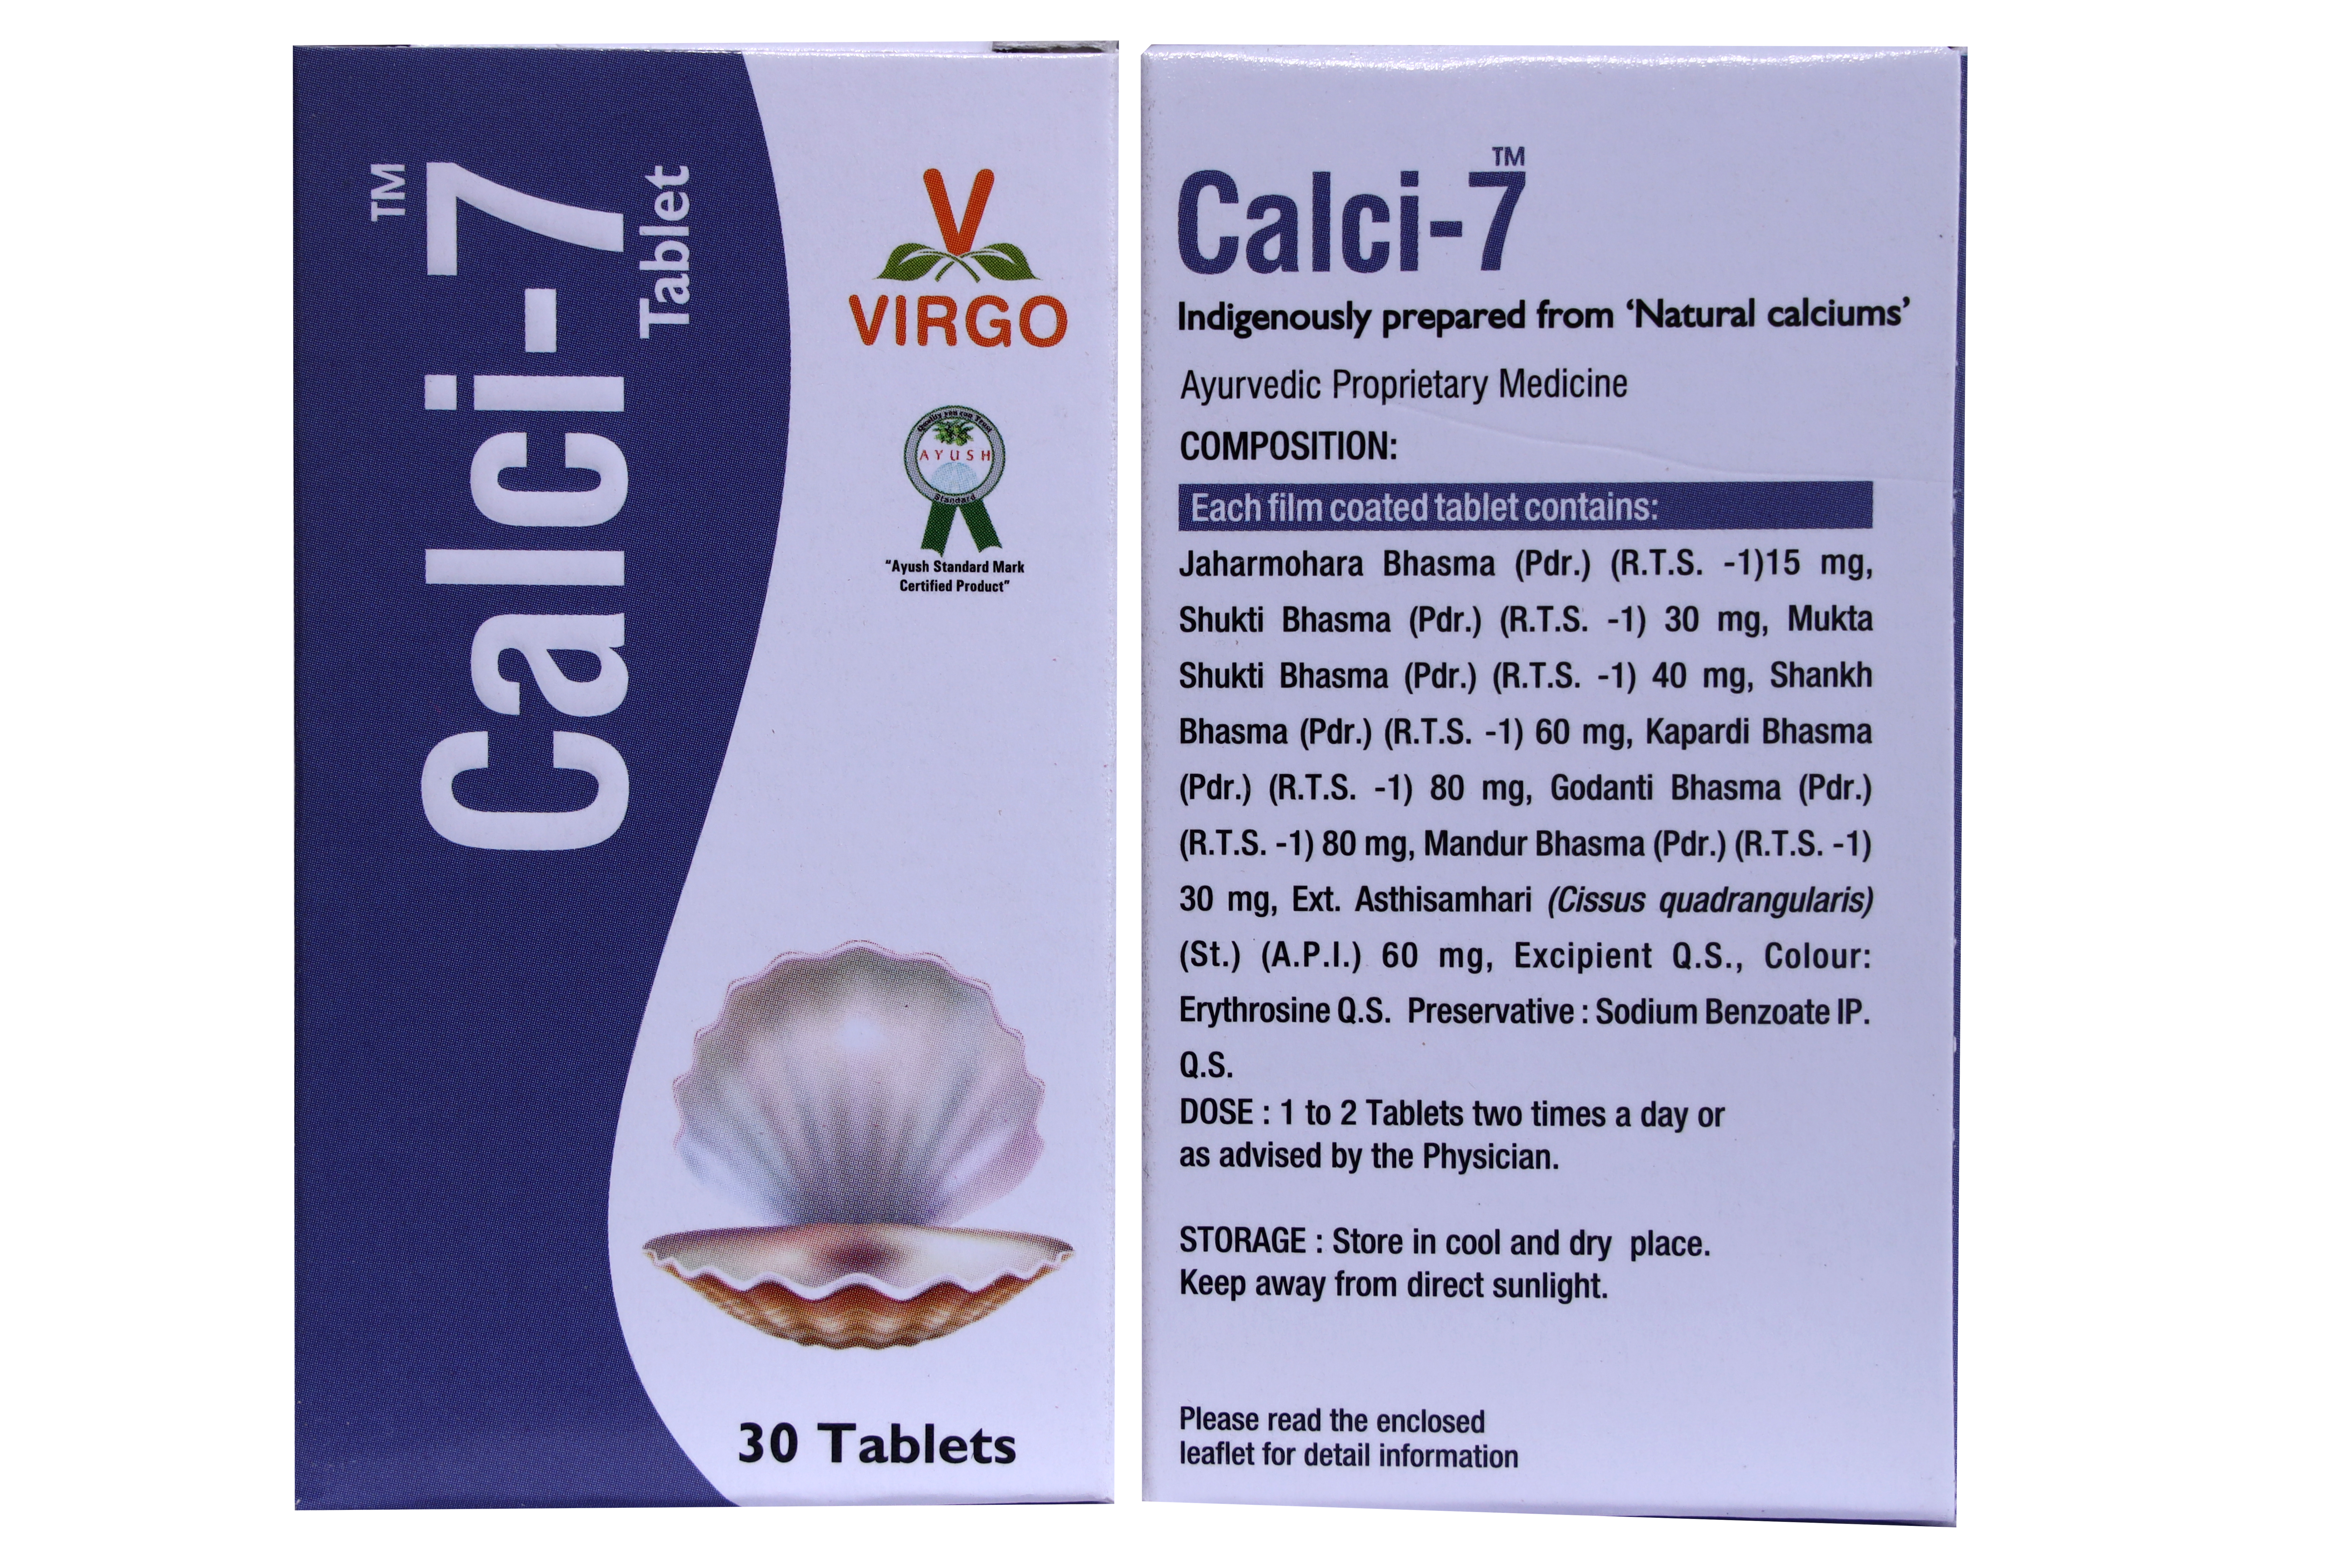 Virgo Calci-7 Tablet